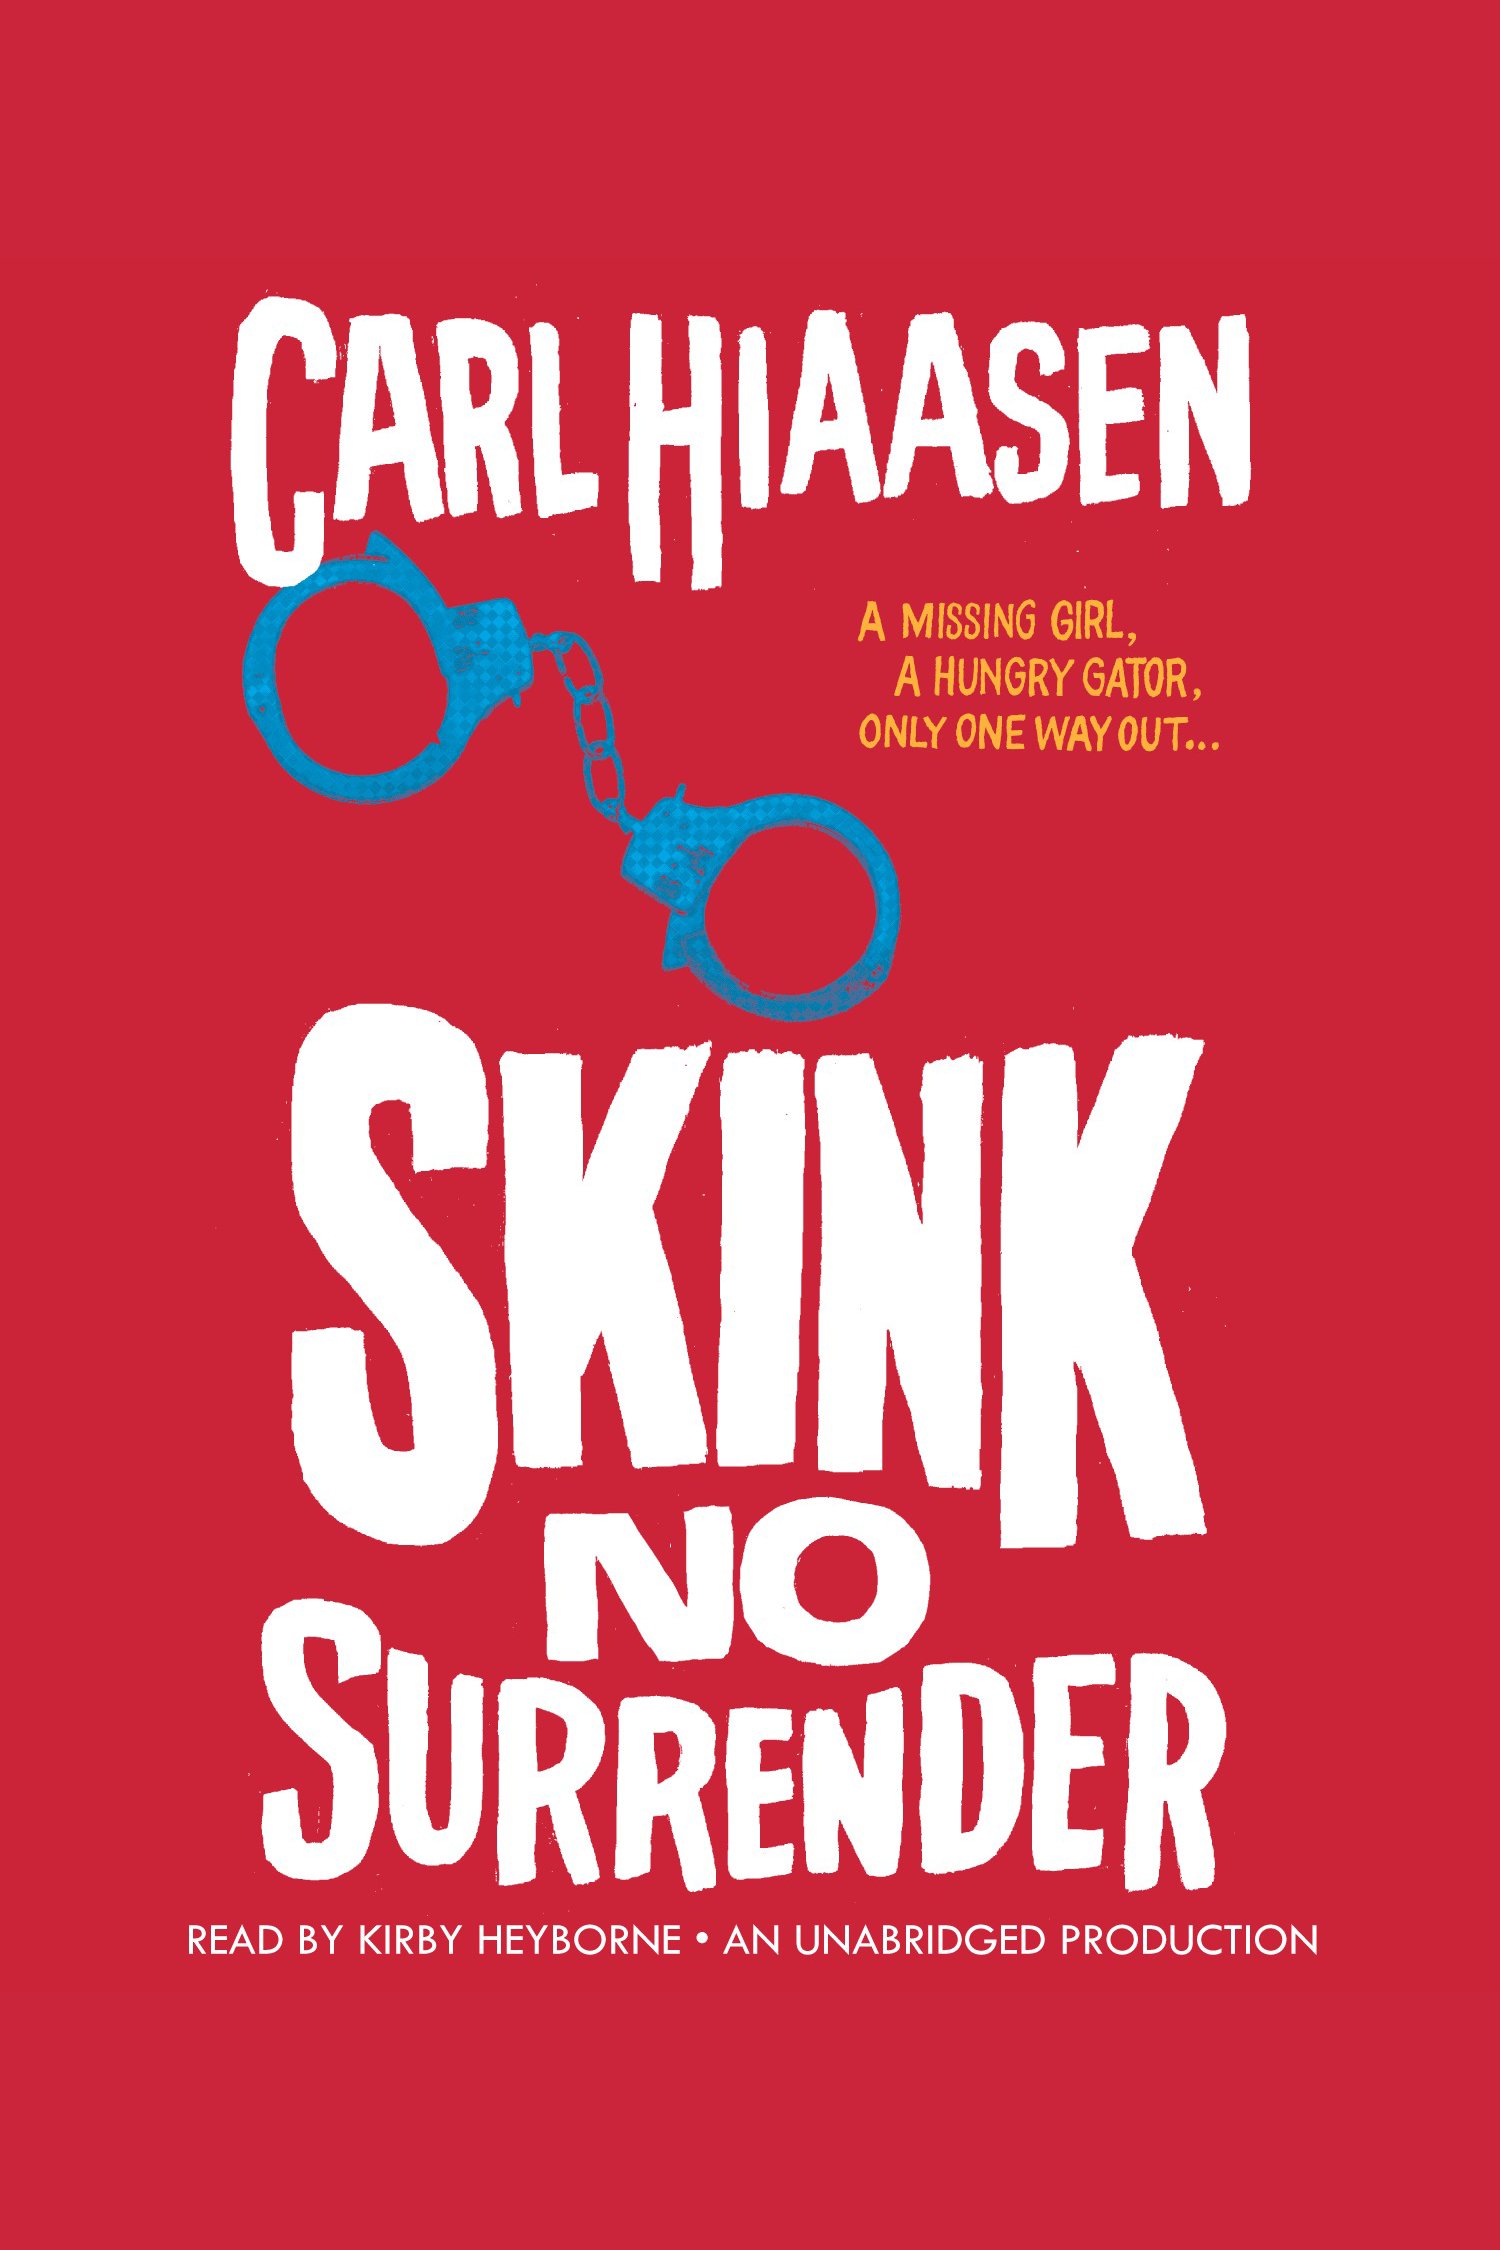 Skink--no surrender cover image